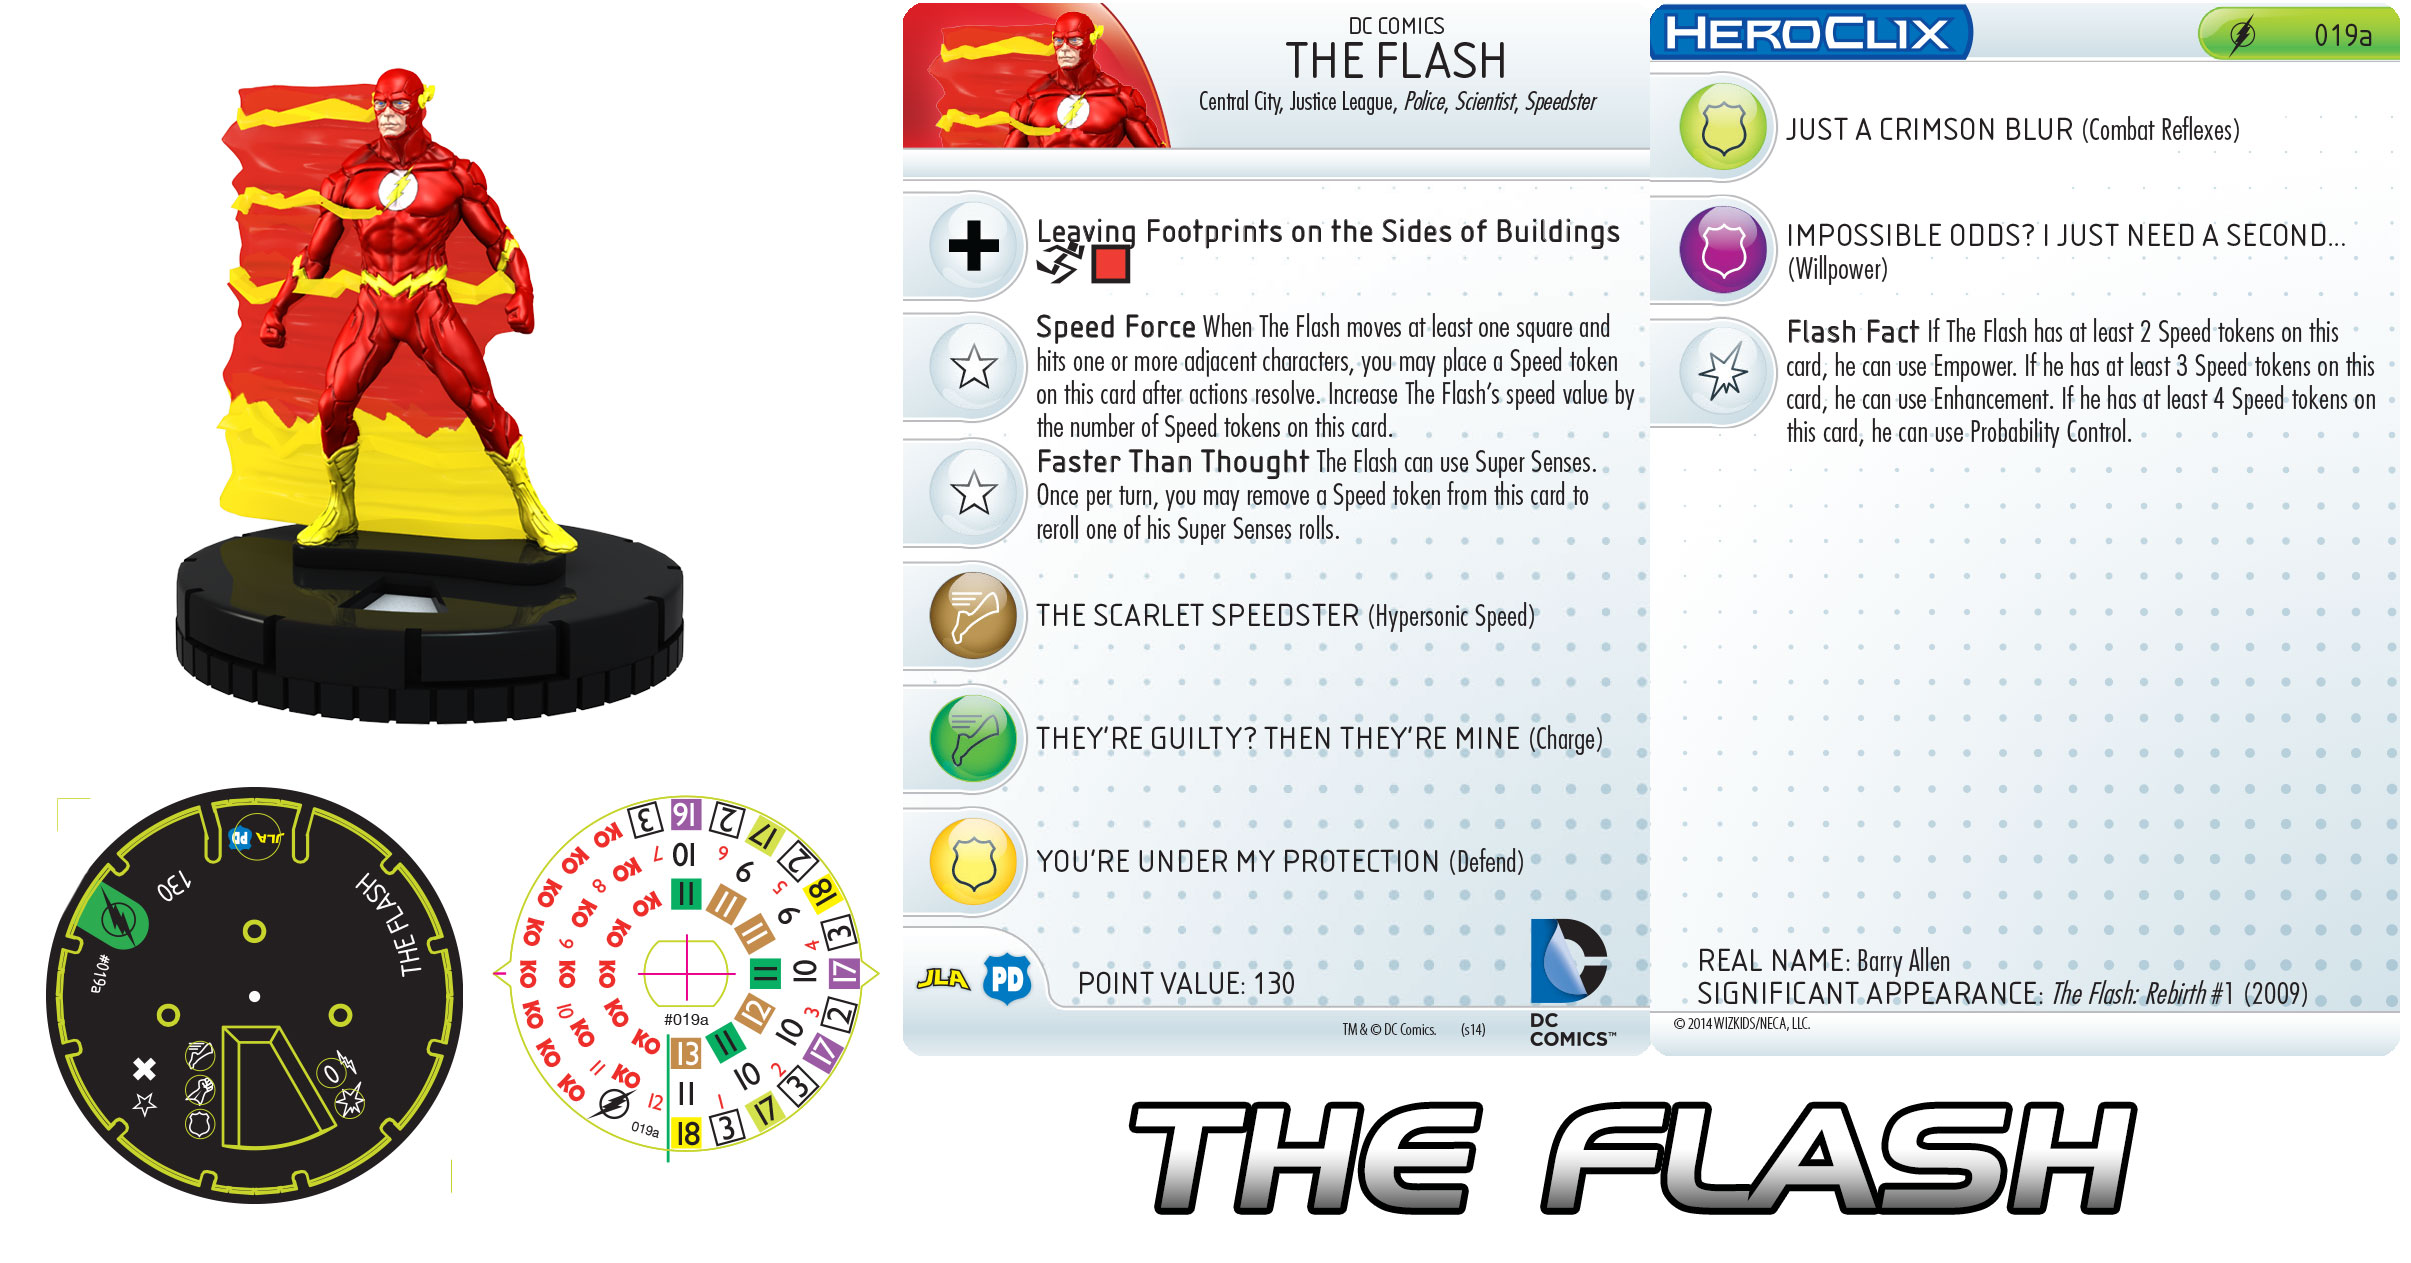 flah y bizarro flash. 019a-the-flash